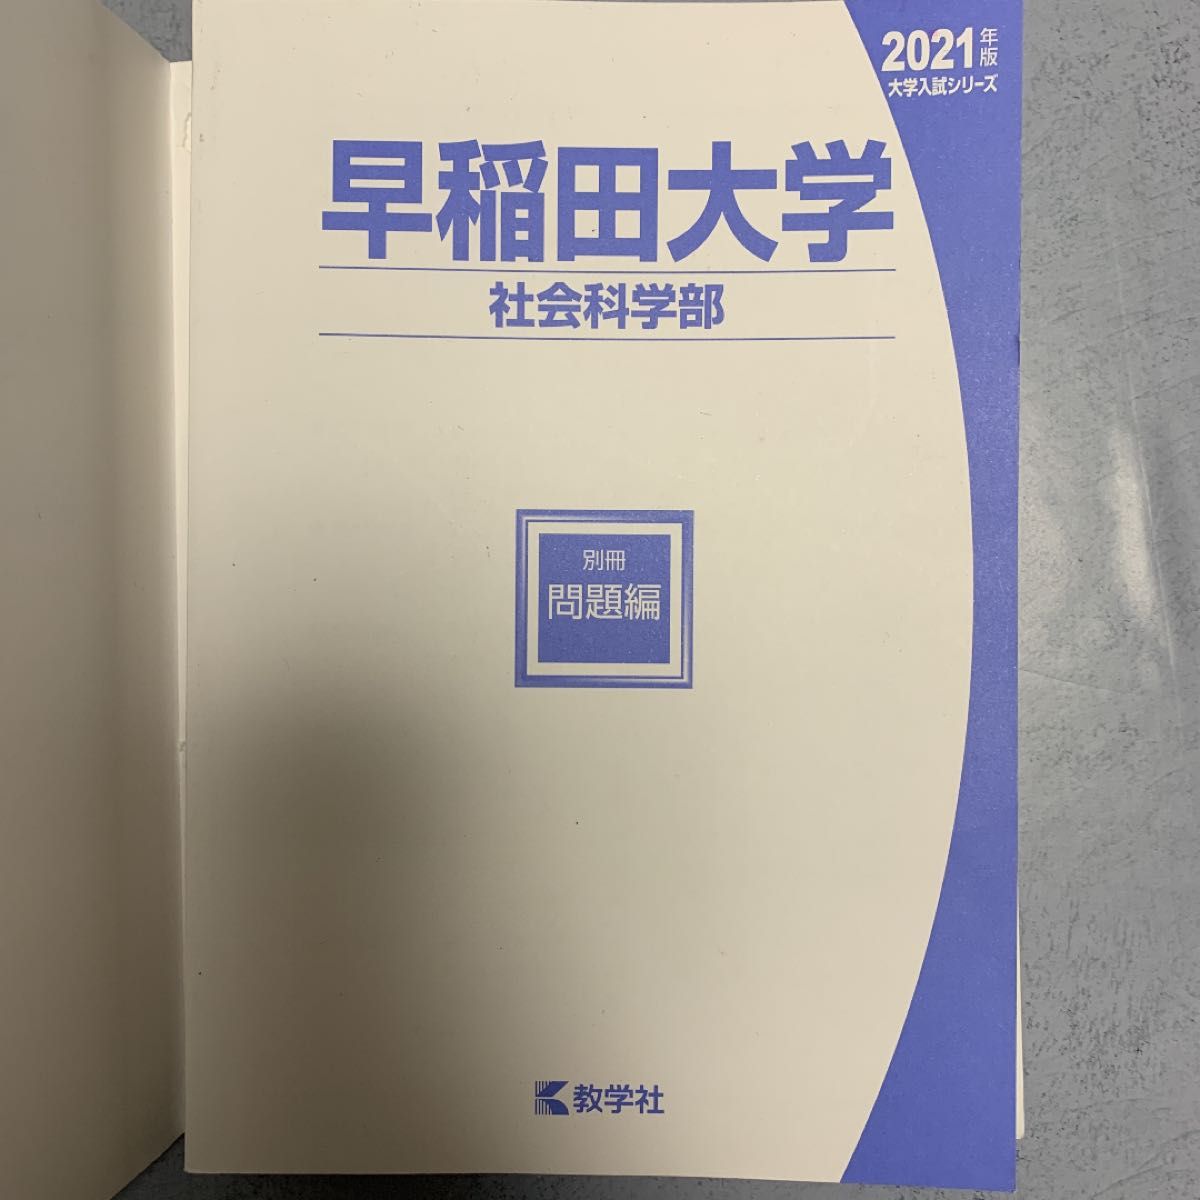 早稲田大学(社会科学部) 2021年版 教学社編集部